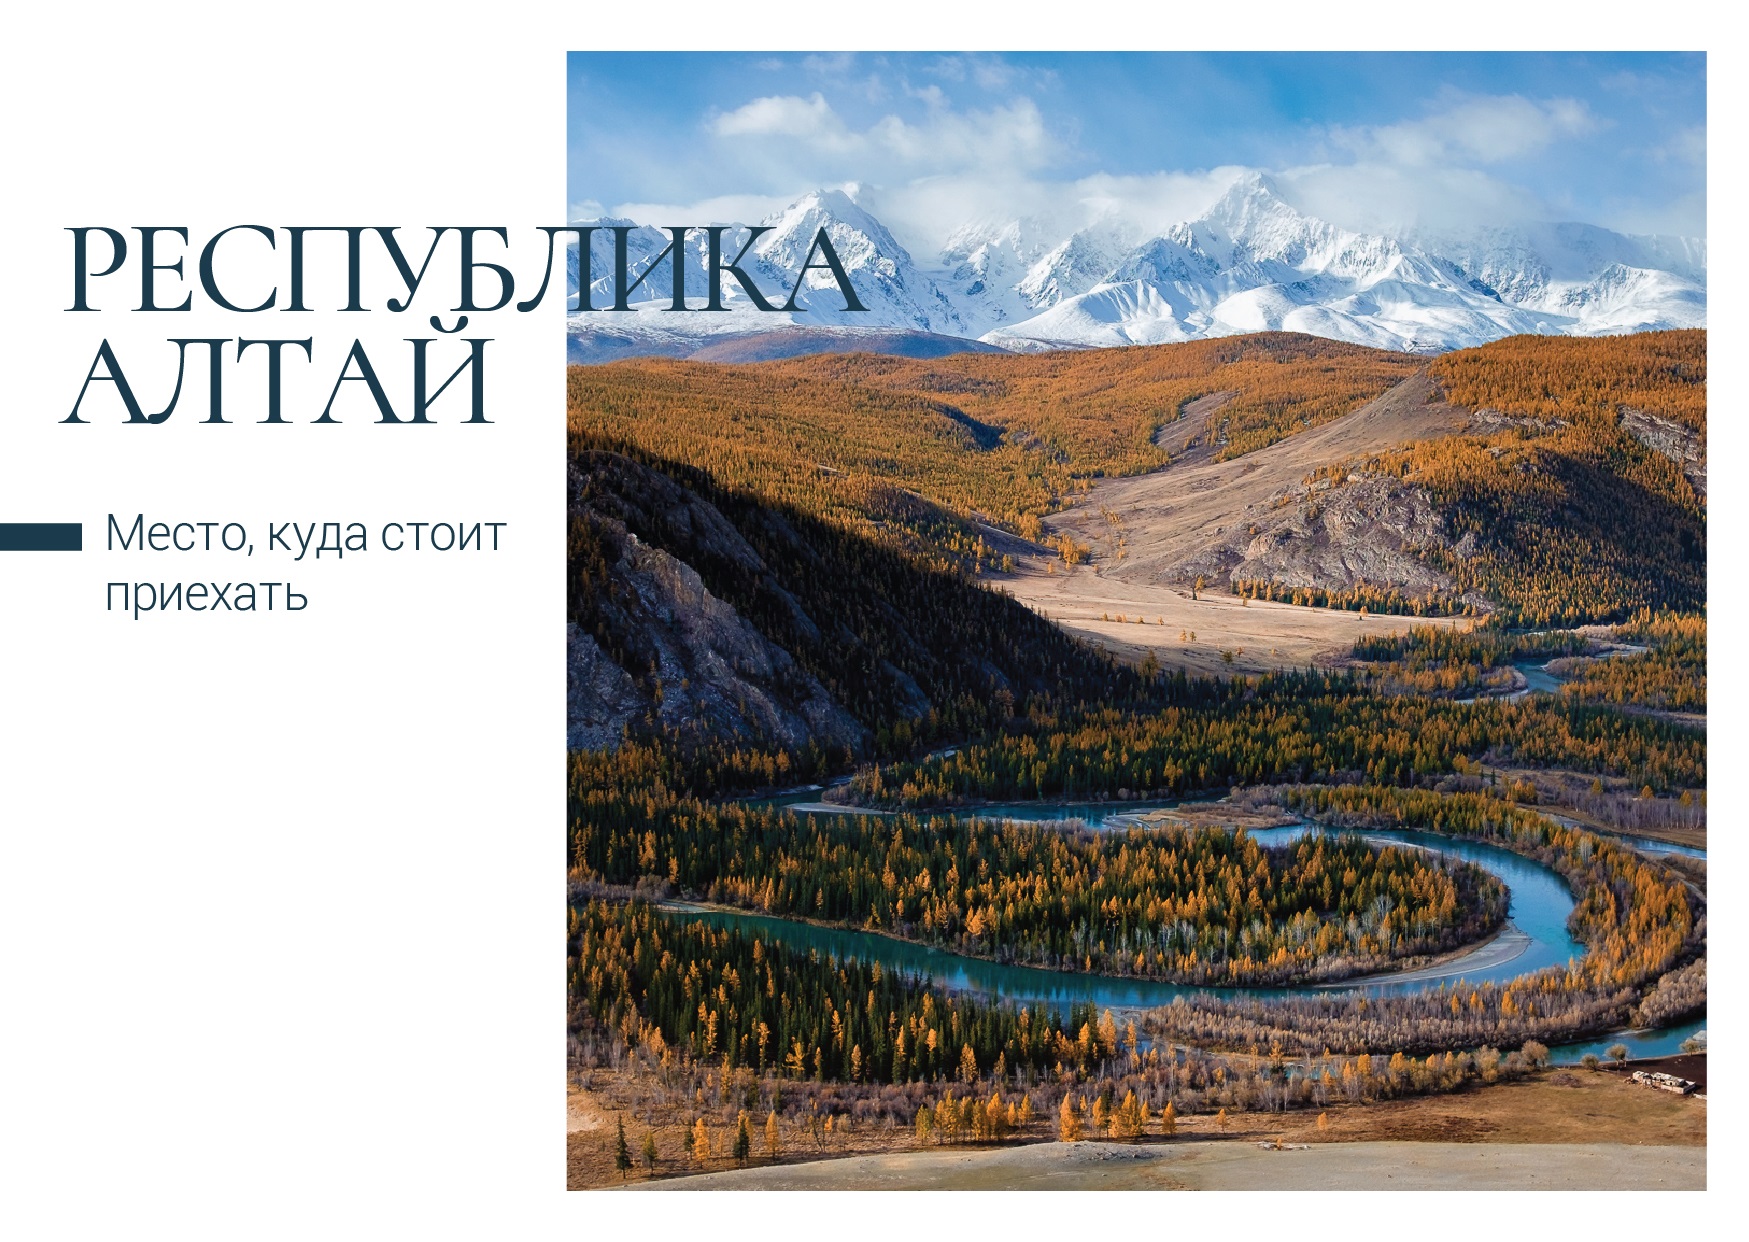 Новые открытки из коллекционной серии выпустила Почта России